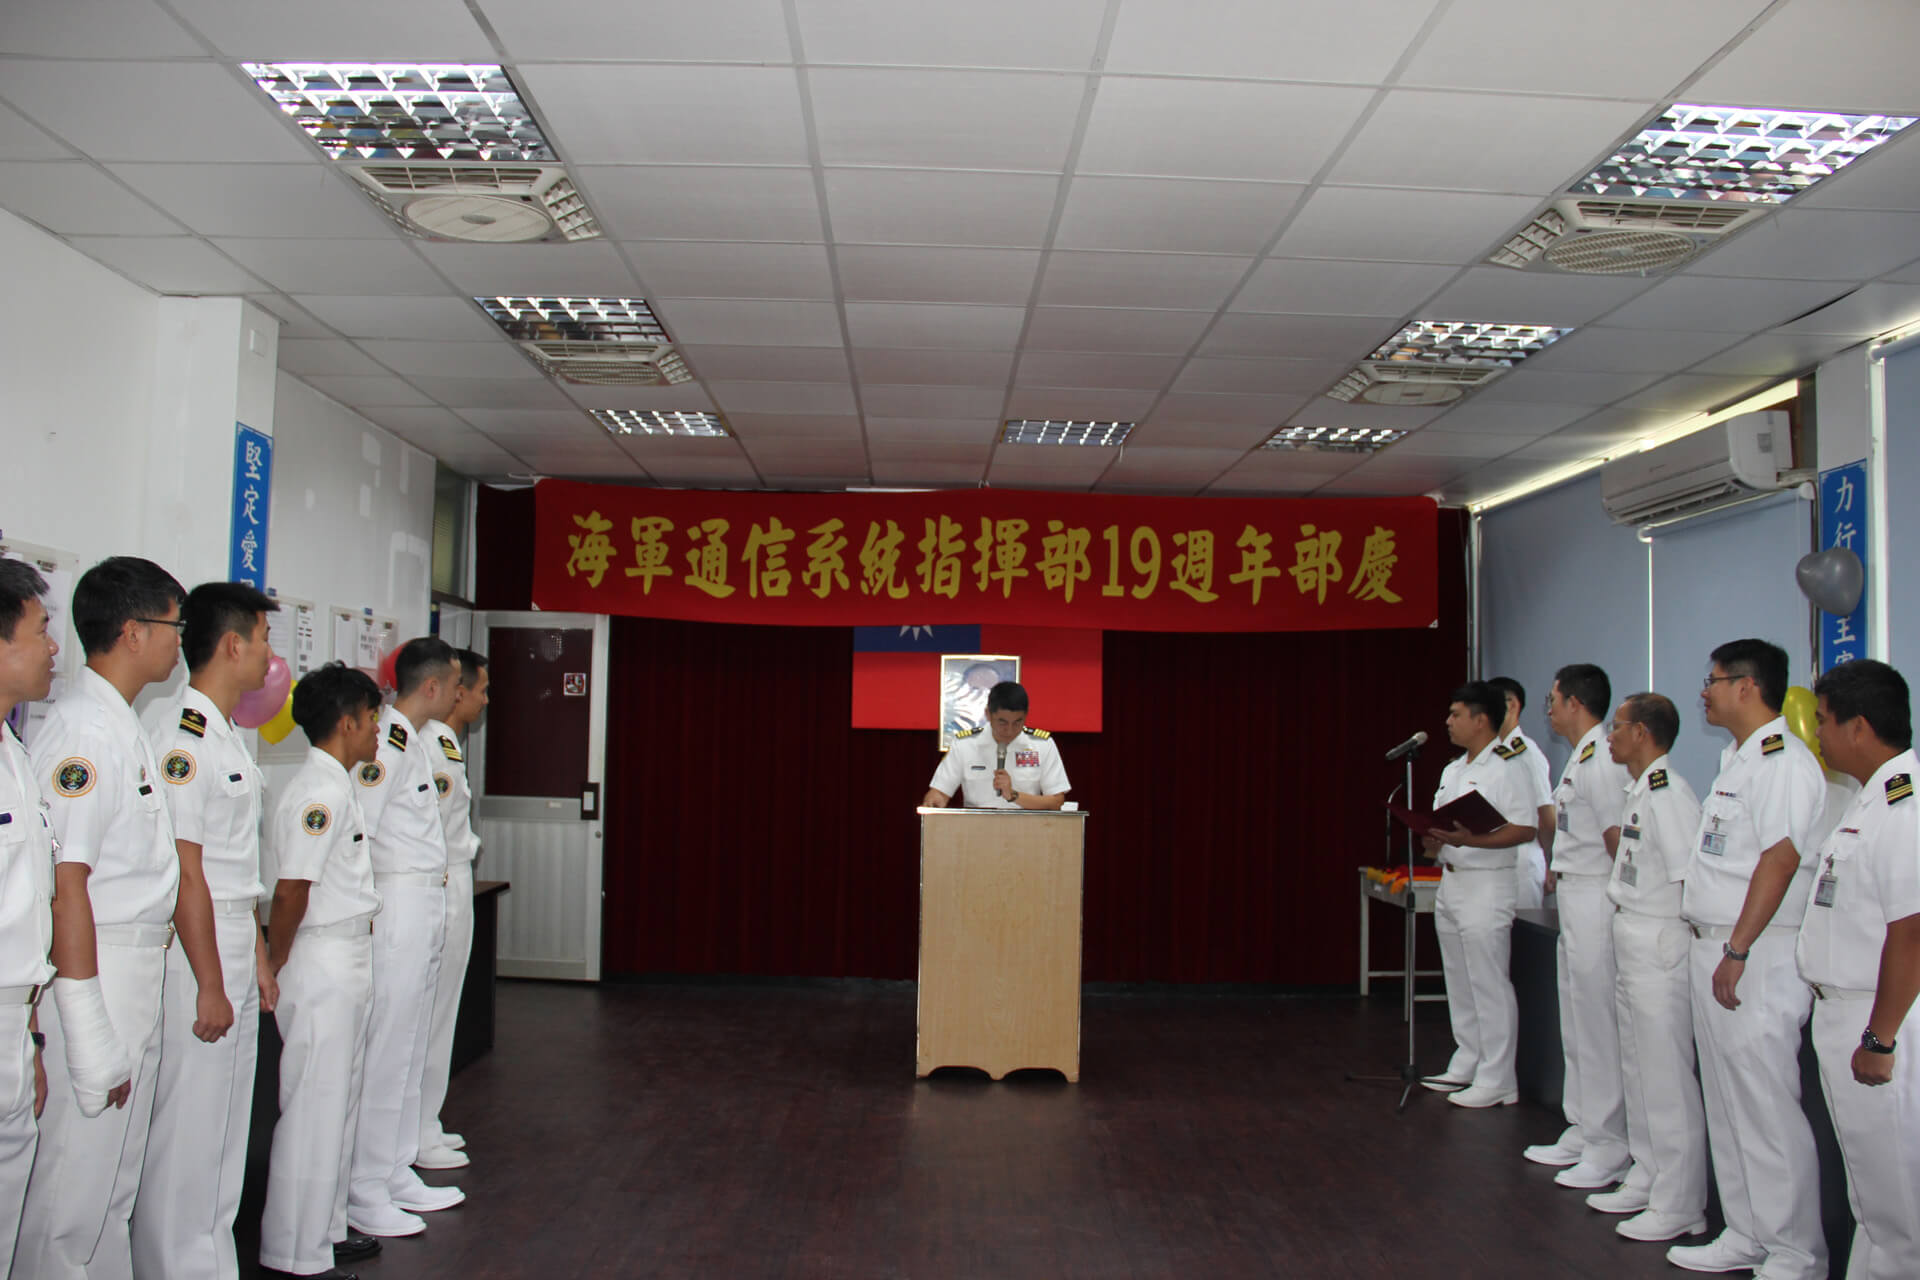 海軍通信系統指揮部19週年部慶指揮官精神講話。